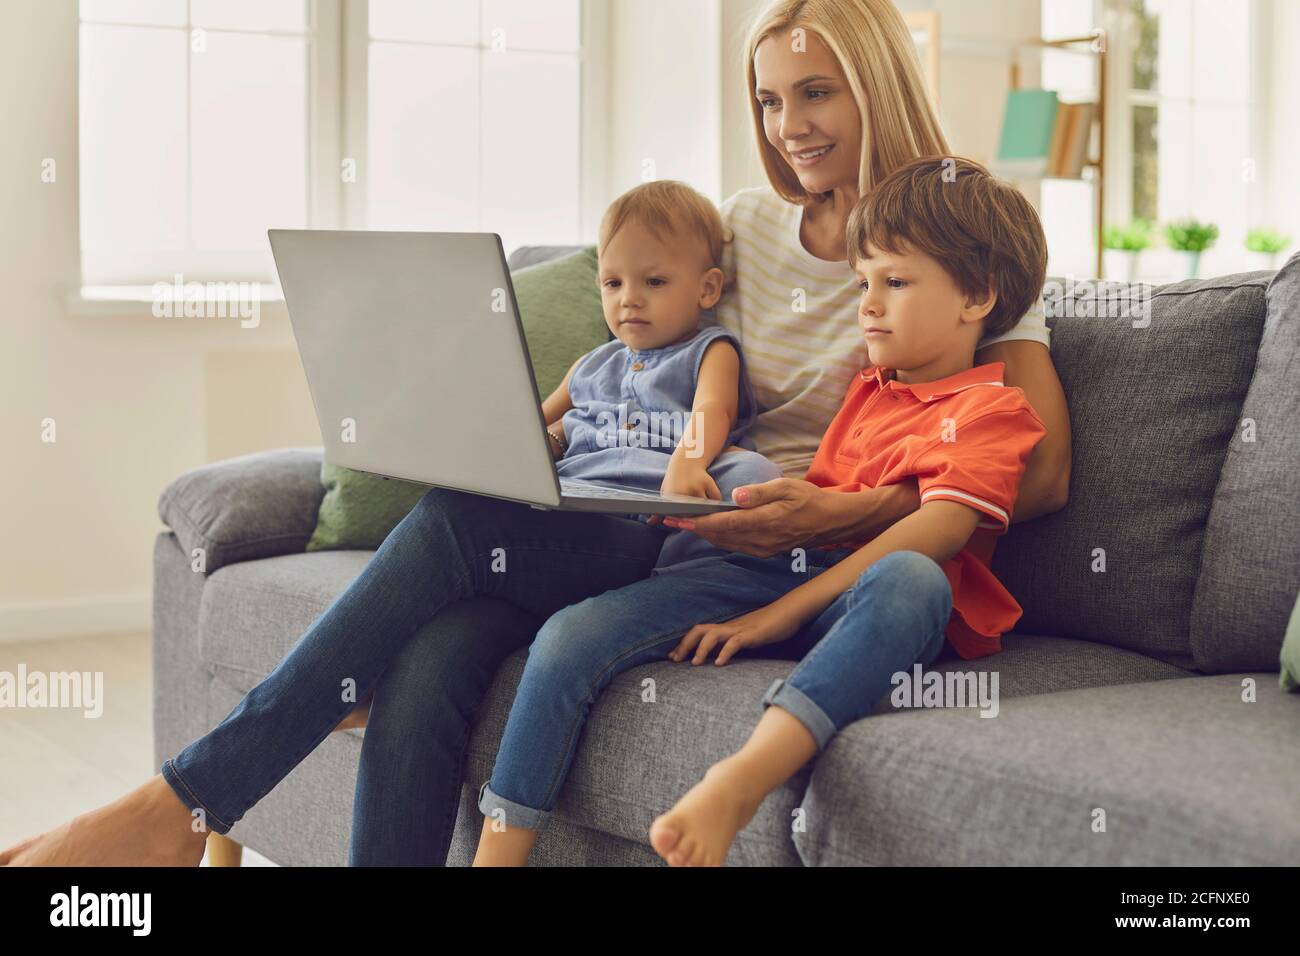 Mamma e bambini che usano il computer portatile per guardare i cartoni animati educativi o per videochattare con i parenti Foto Stock